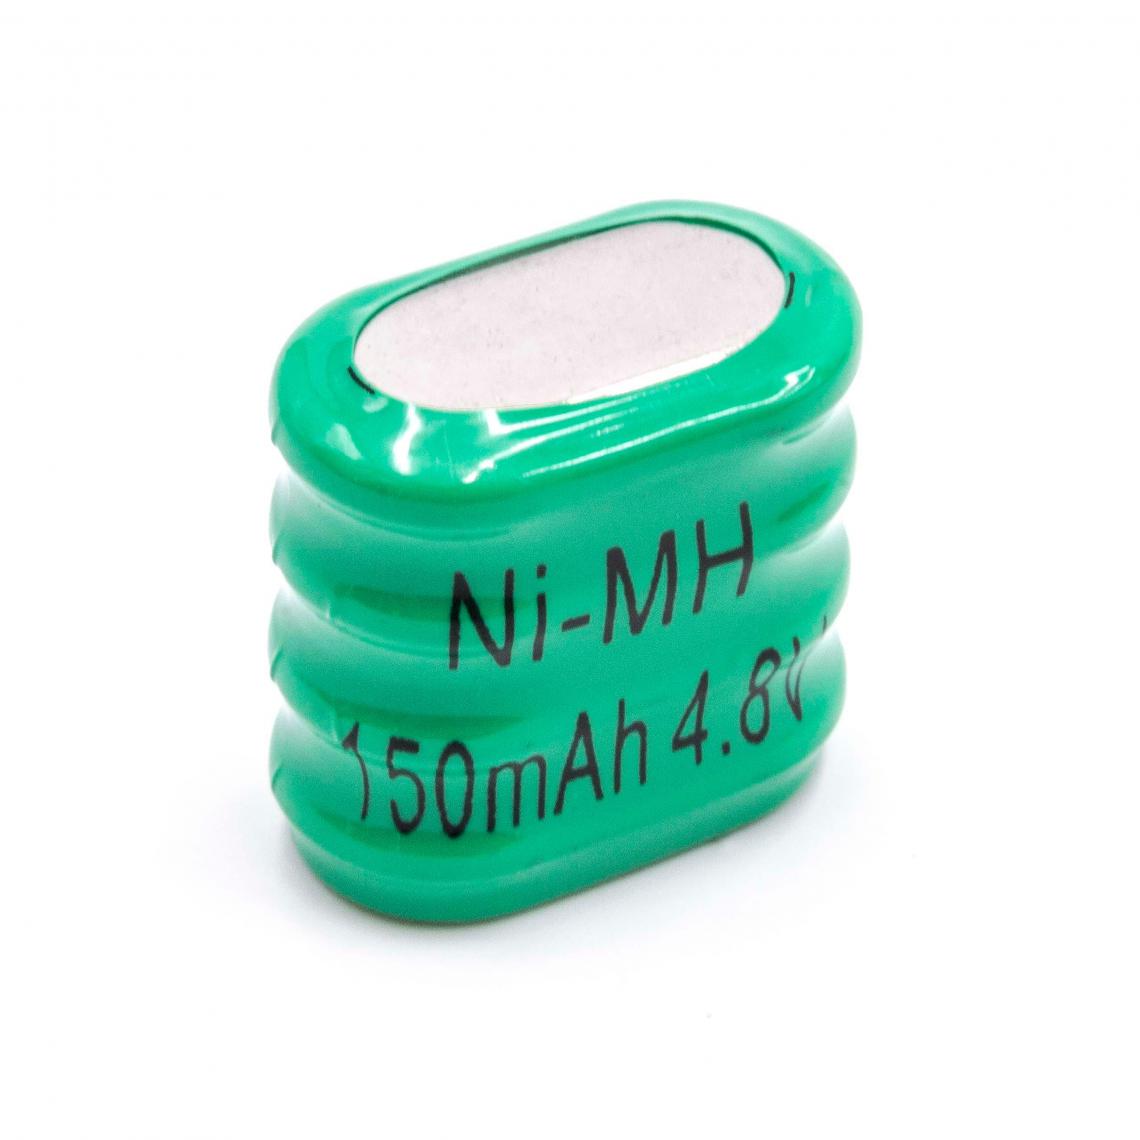 Vhbw - vhbw NiMH Remplacement de la pile bouton (4x cellule) type 4/V150H 150mAh 4.8V convient pour les batteries de modélisme, l'éclairage solaire, etc. - Autre appareil de mesure